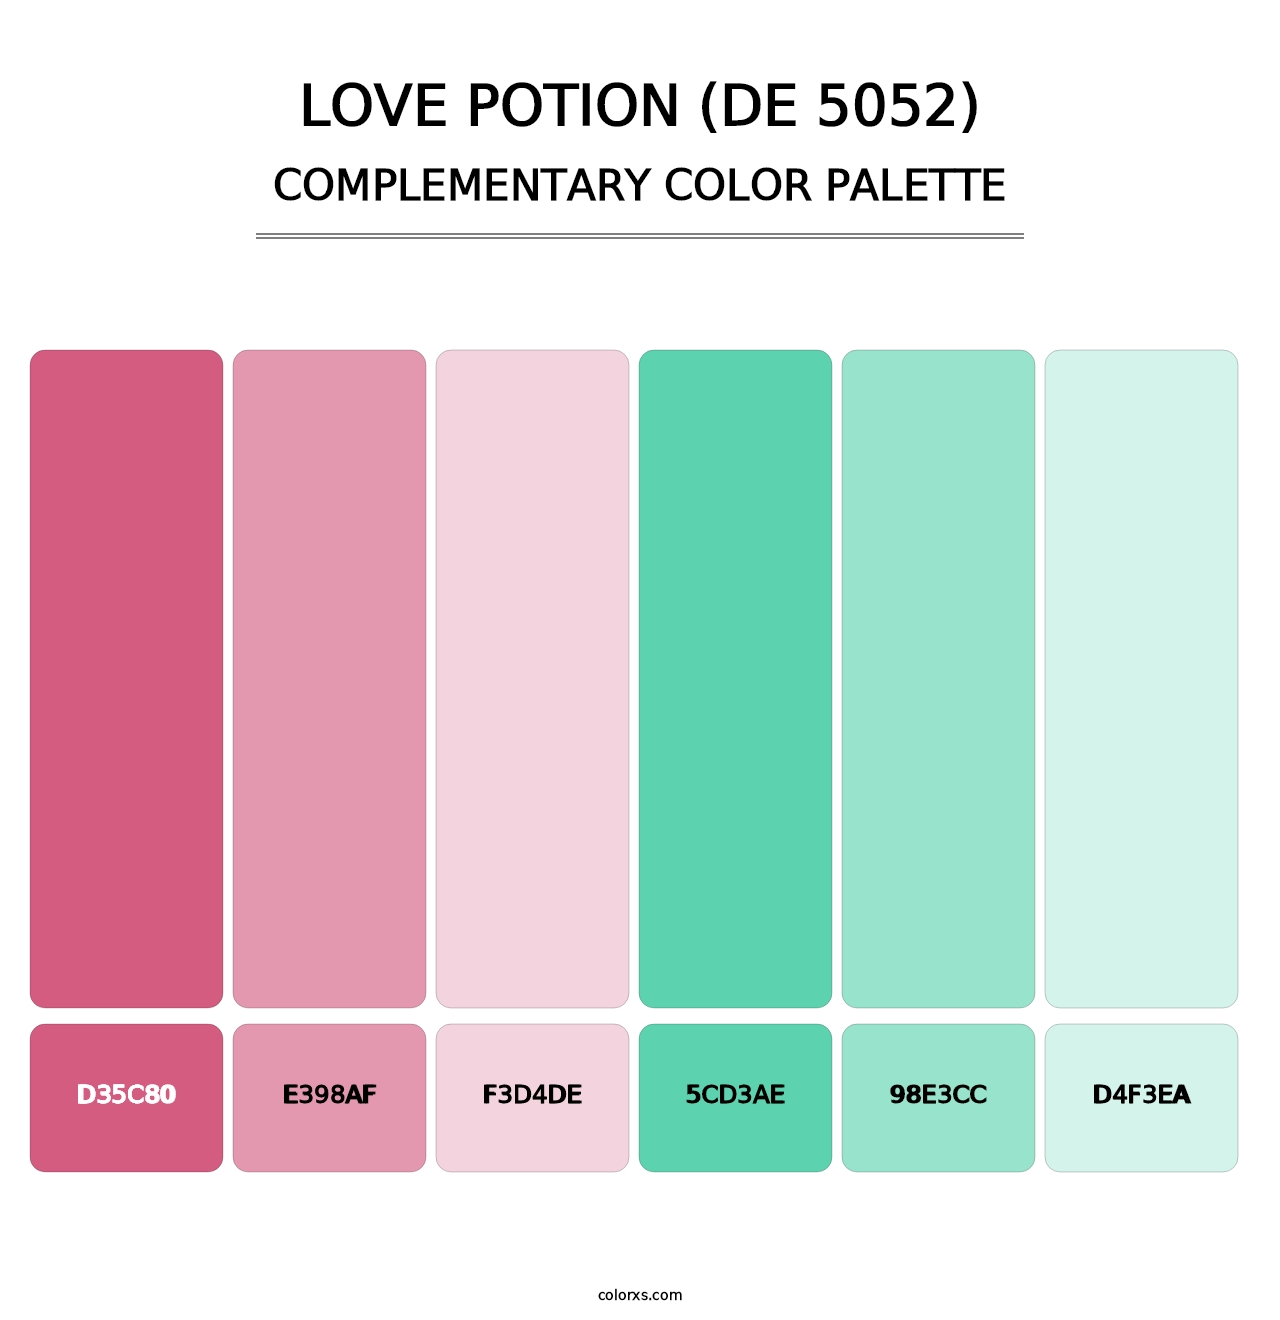 Love Potion (DE 5052) - Complementary Color Palette